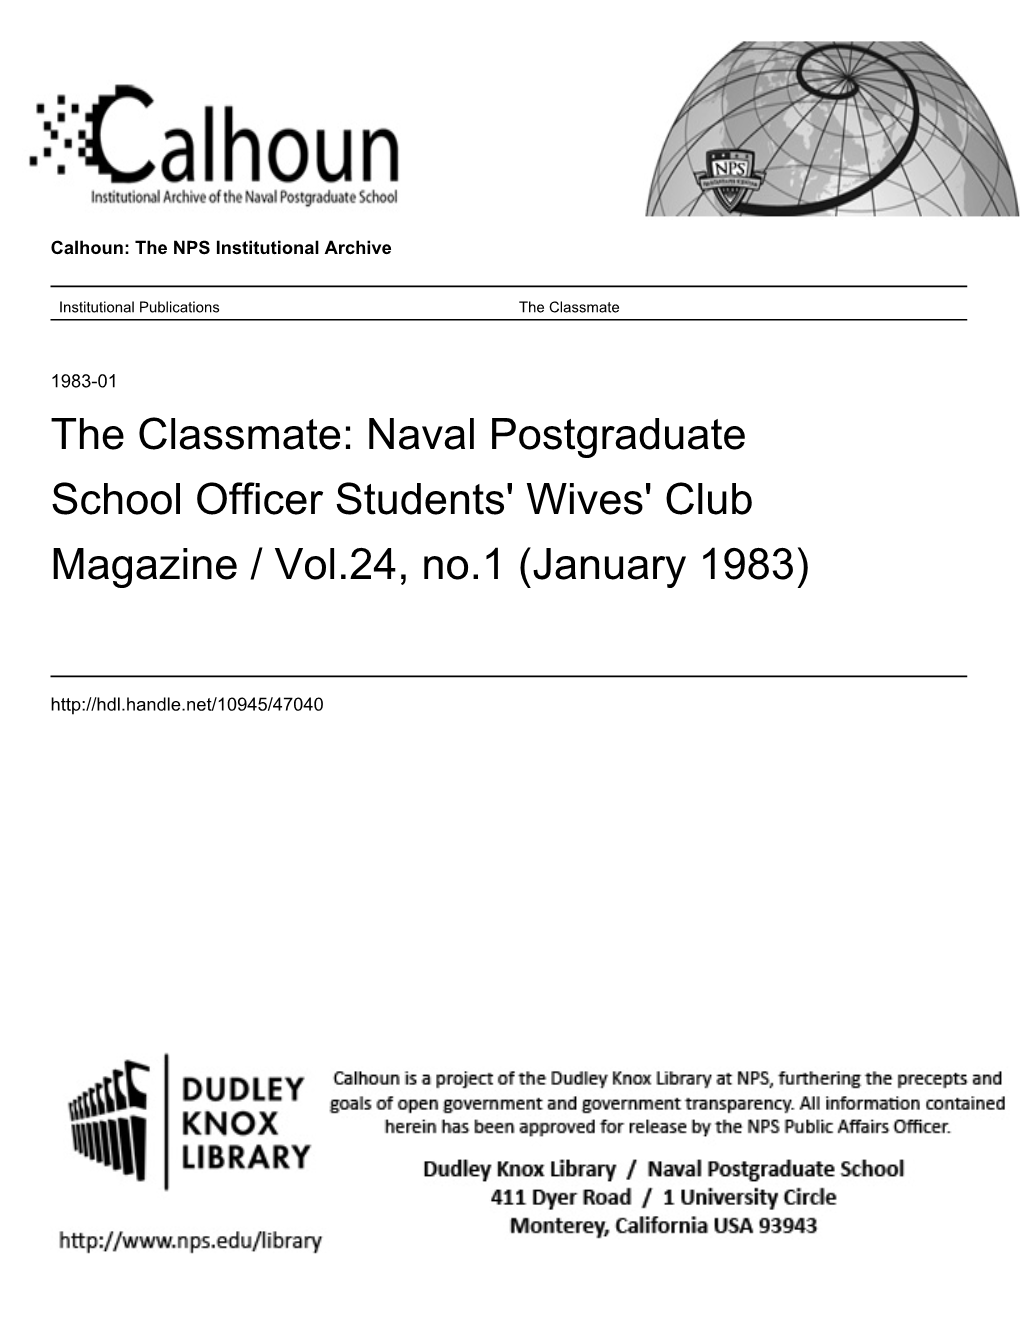 The Classmate Vol.24 No.1